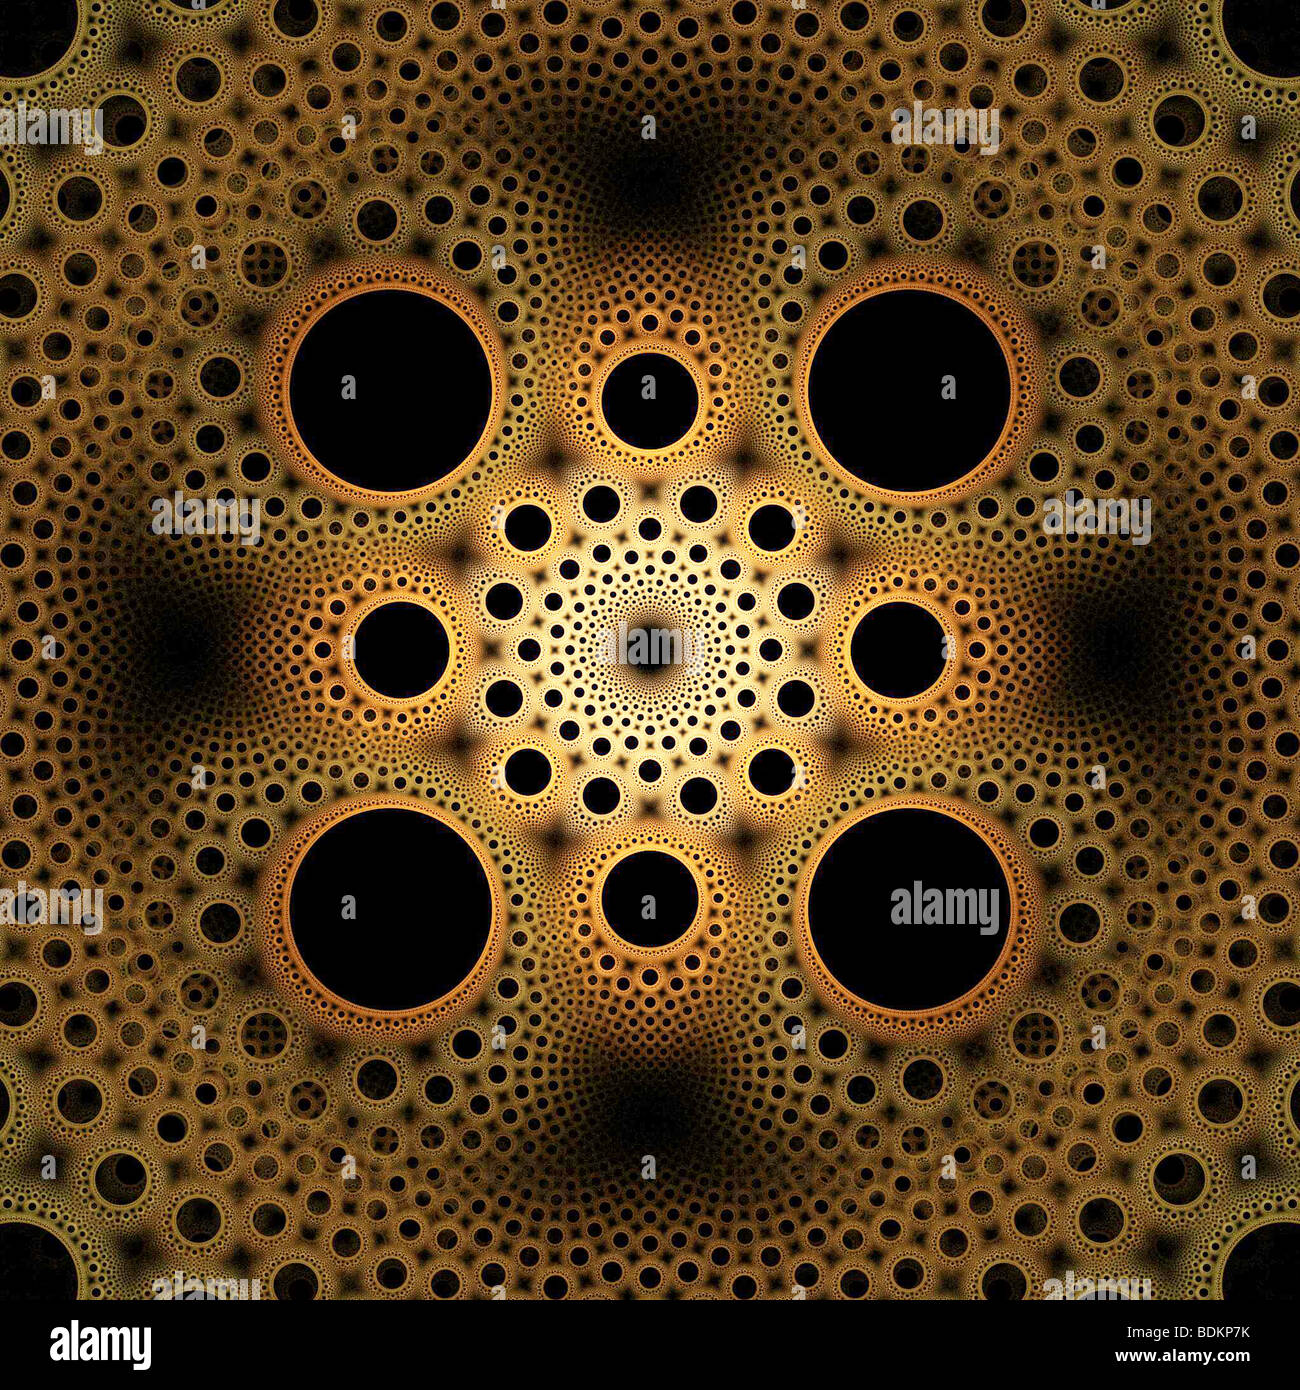 Image générée par ordinateur d'une fractale de flammes. Flammes fractales sont membre de la fonction itérée classe système de fractals Banque D'Images